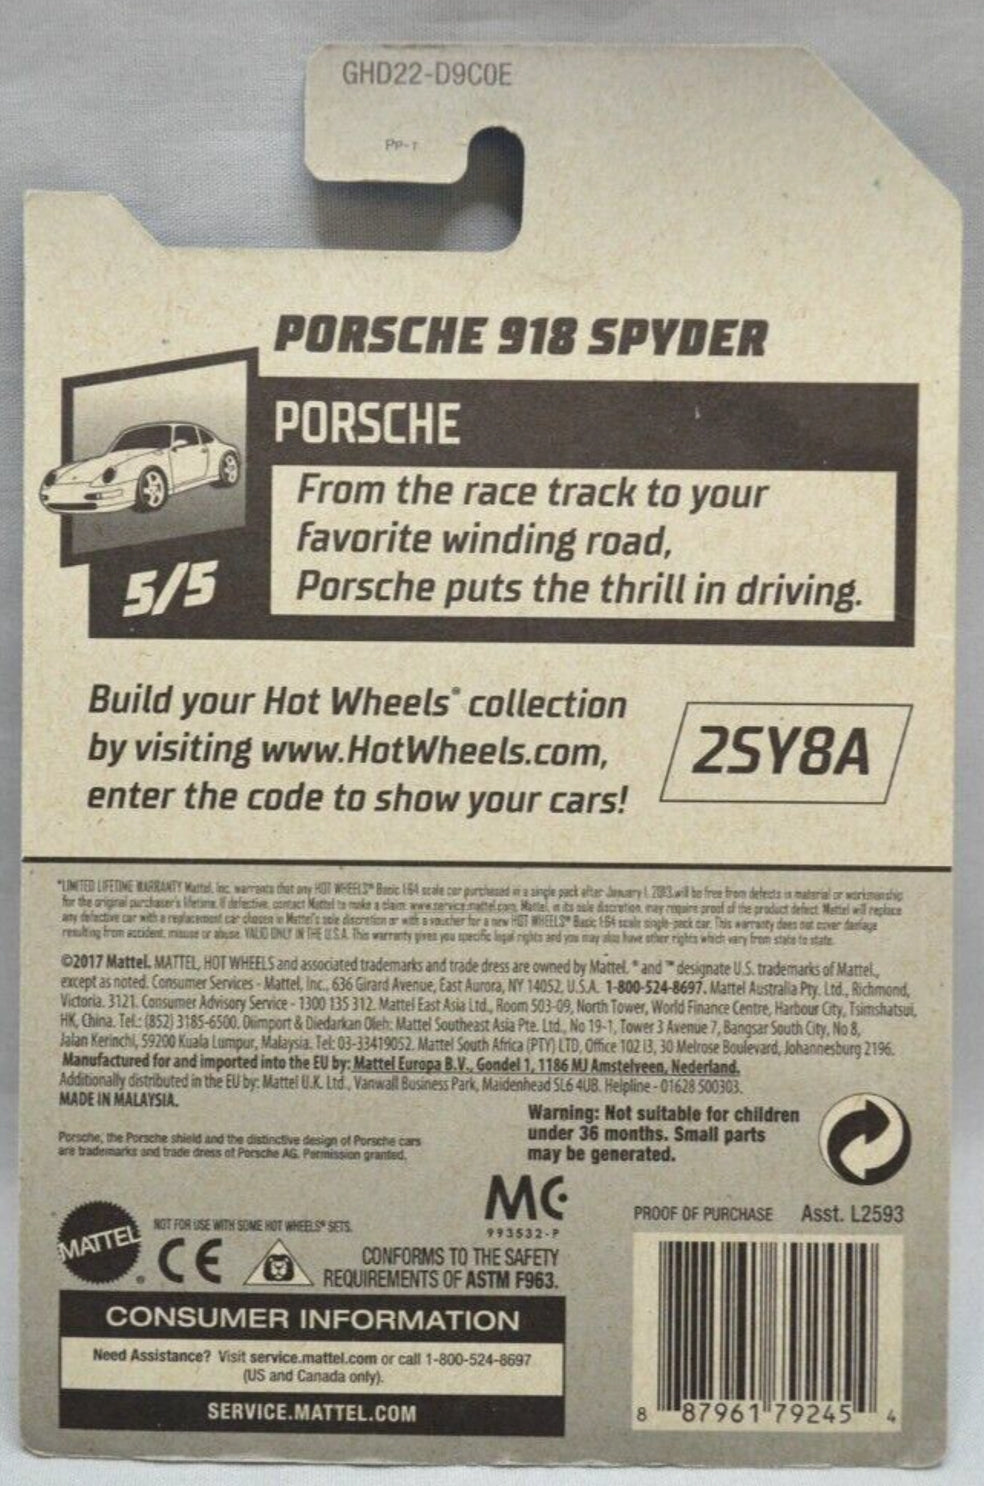 Hot Wheels Porsche 918 Spyder HW Porsche GHD22 - Plus (+) a Bonus Hot Wheel